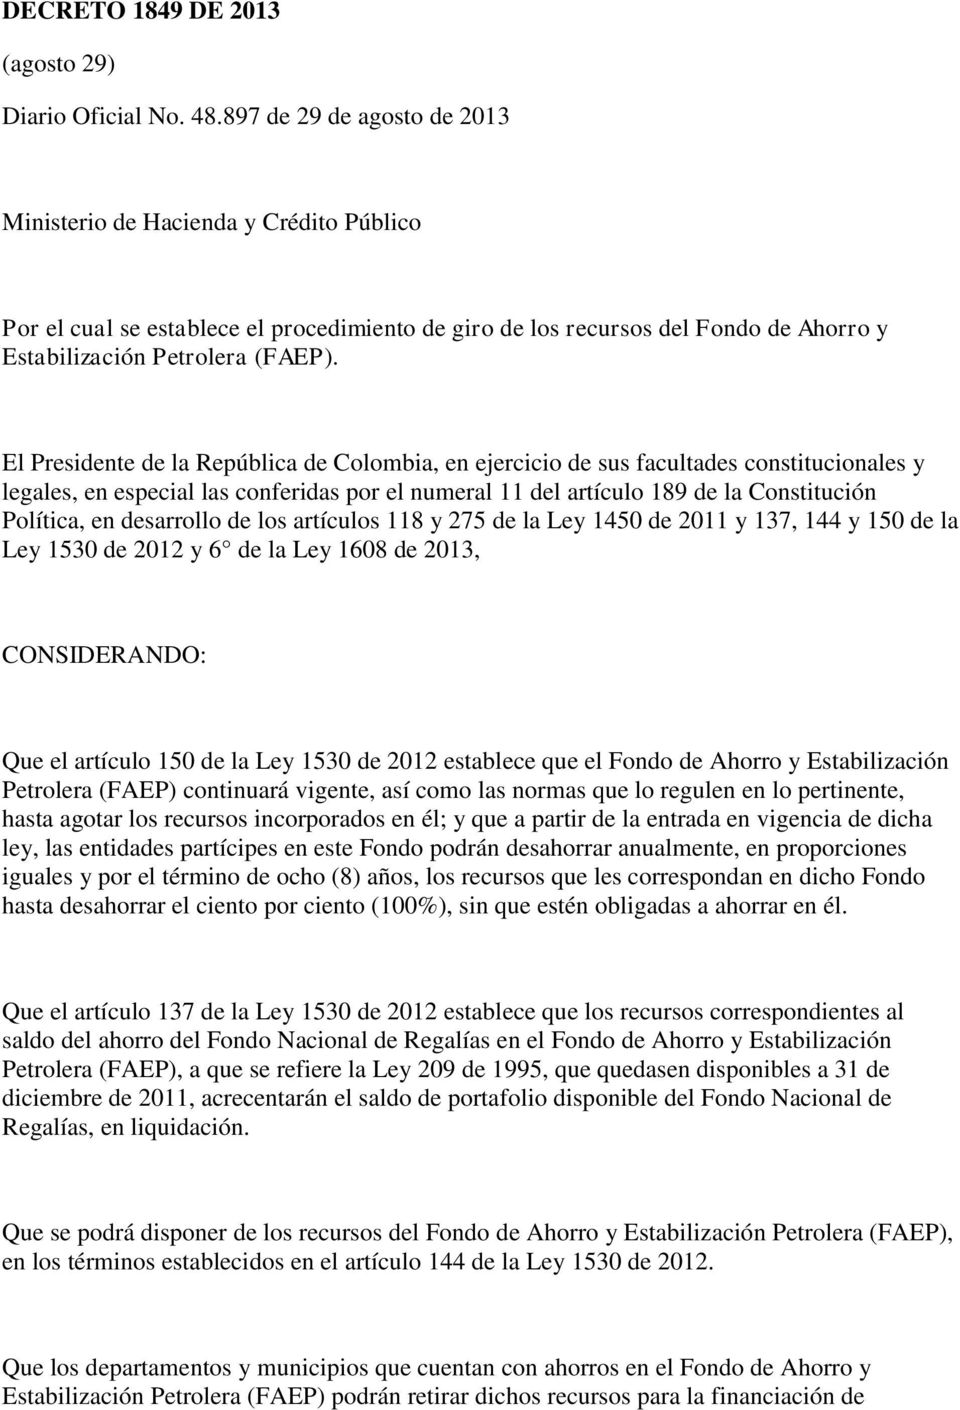 El Presidente de la República de Colombia, en ejercicio de sus facultades constitucionales y legales, en especial las conferidas por el numeral 11 del artículo 189 de la Constitución Política, en